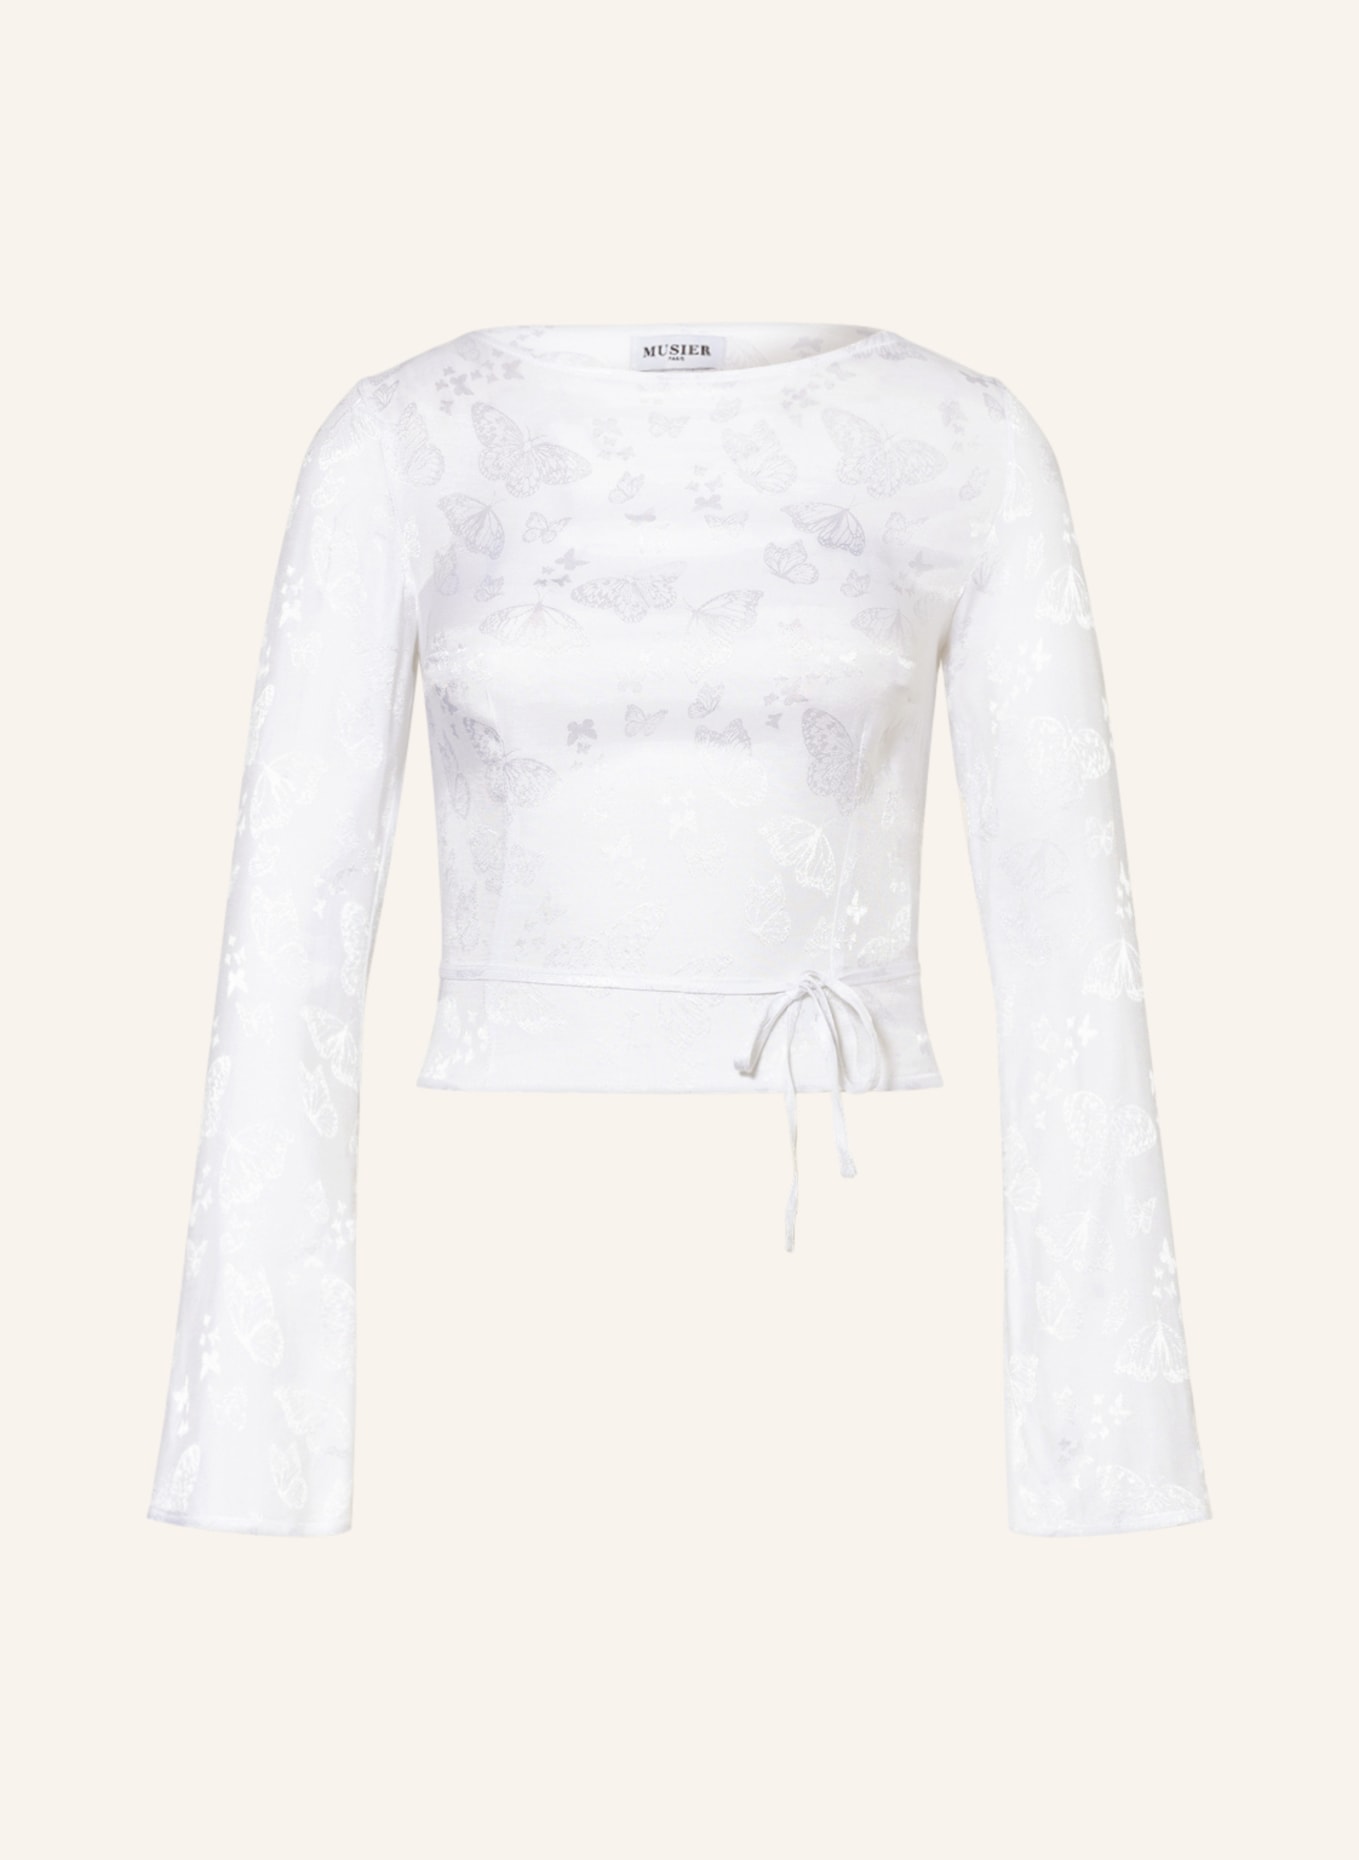 MUSIER PARIS Shirt blouse CARMEN, Color: WHITE (Image 1)